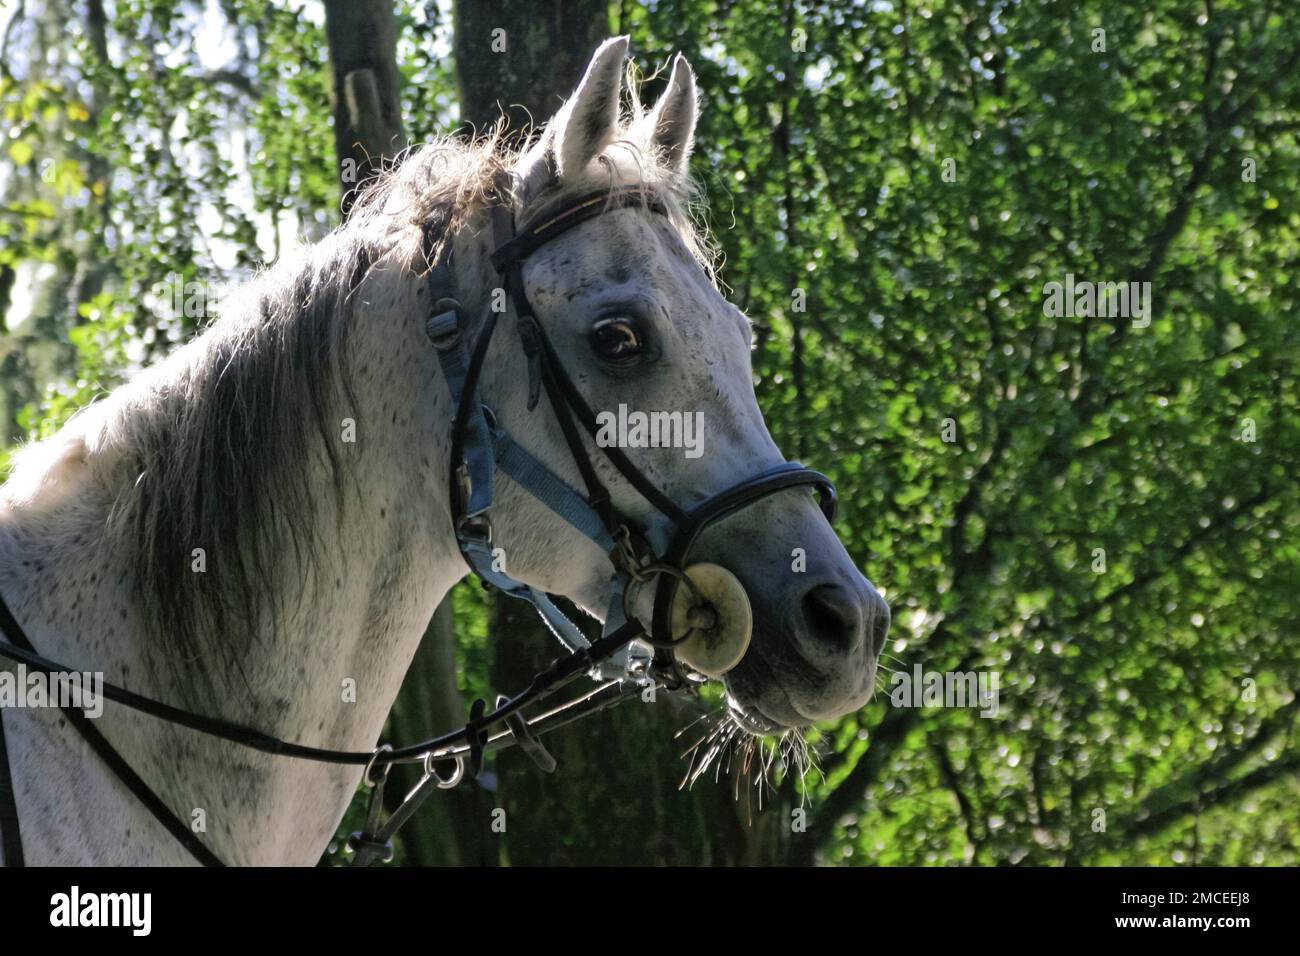 Close-up portrait of Arabian horse, Tuscany, Italy Stock Photo